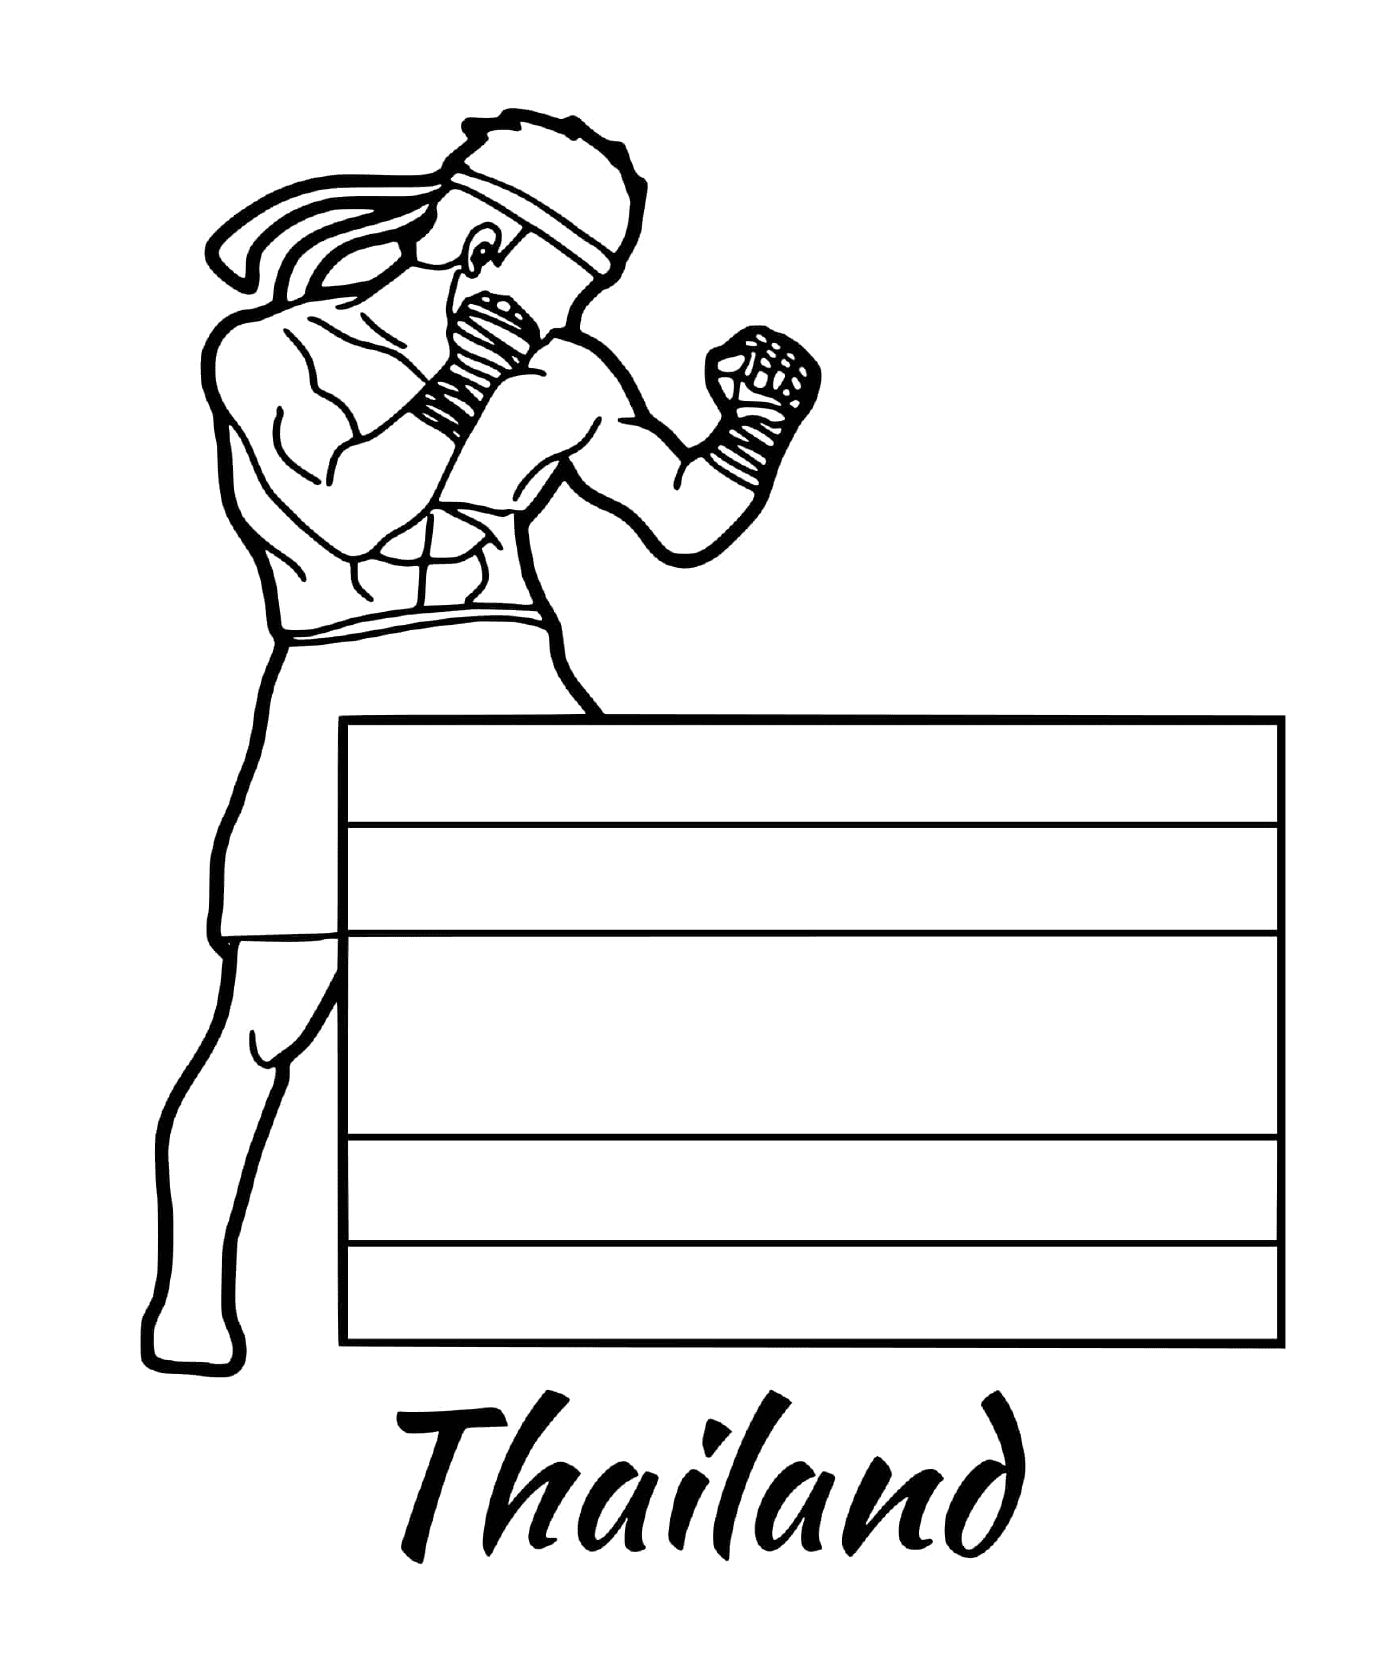  Bandera de Tailandia, Muay Thai 